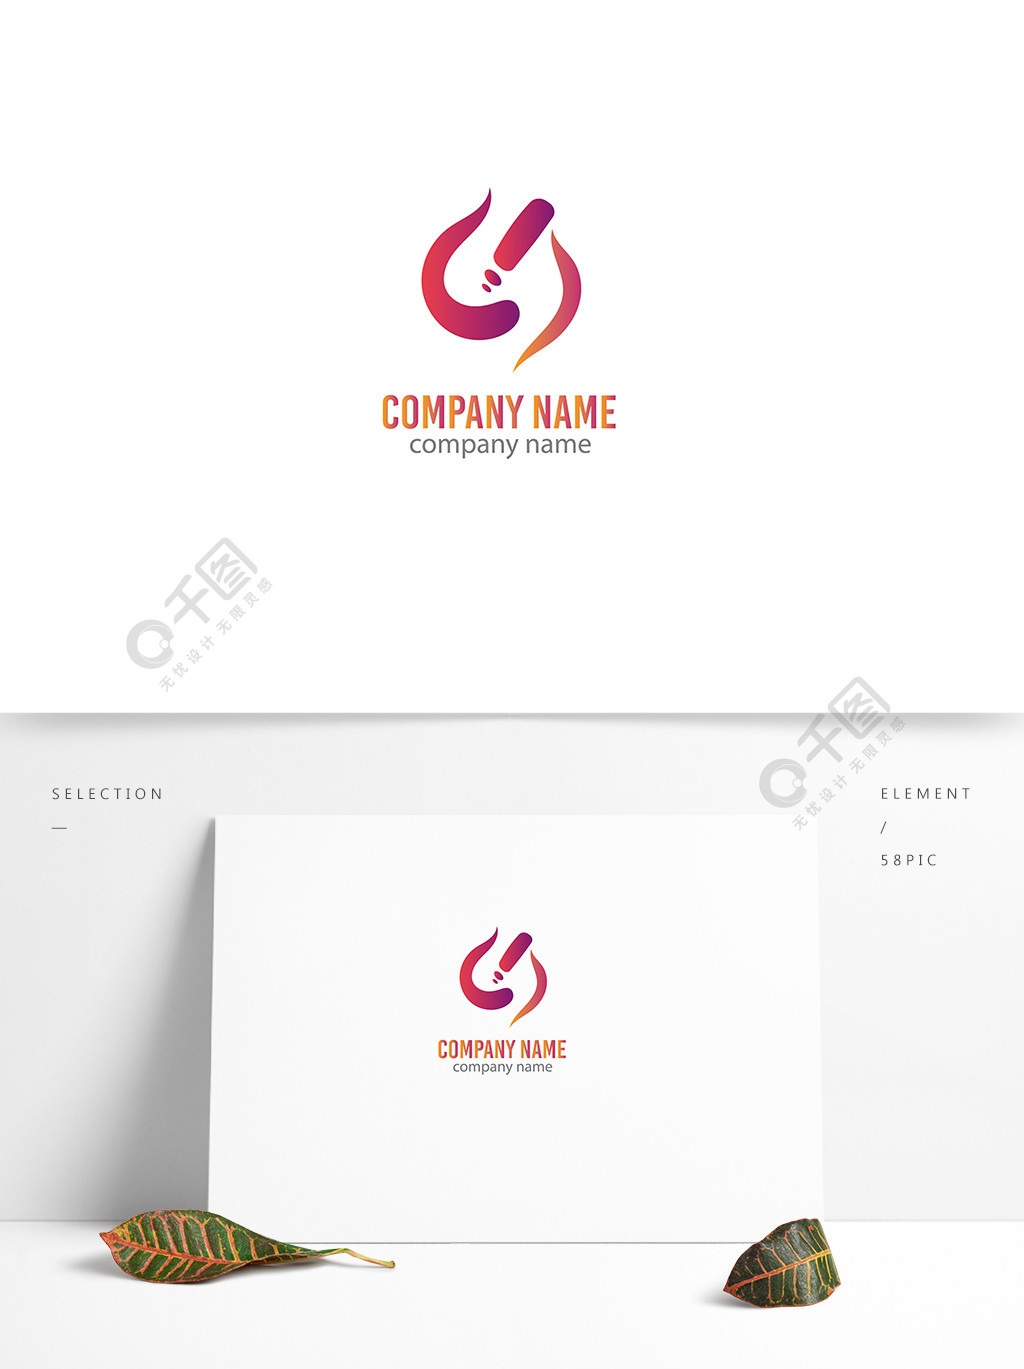 千图网公司企业商标logo标志流瑞流年